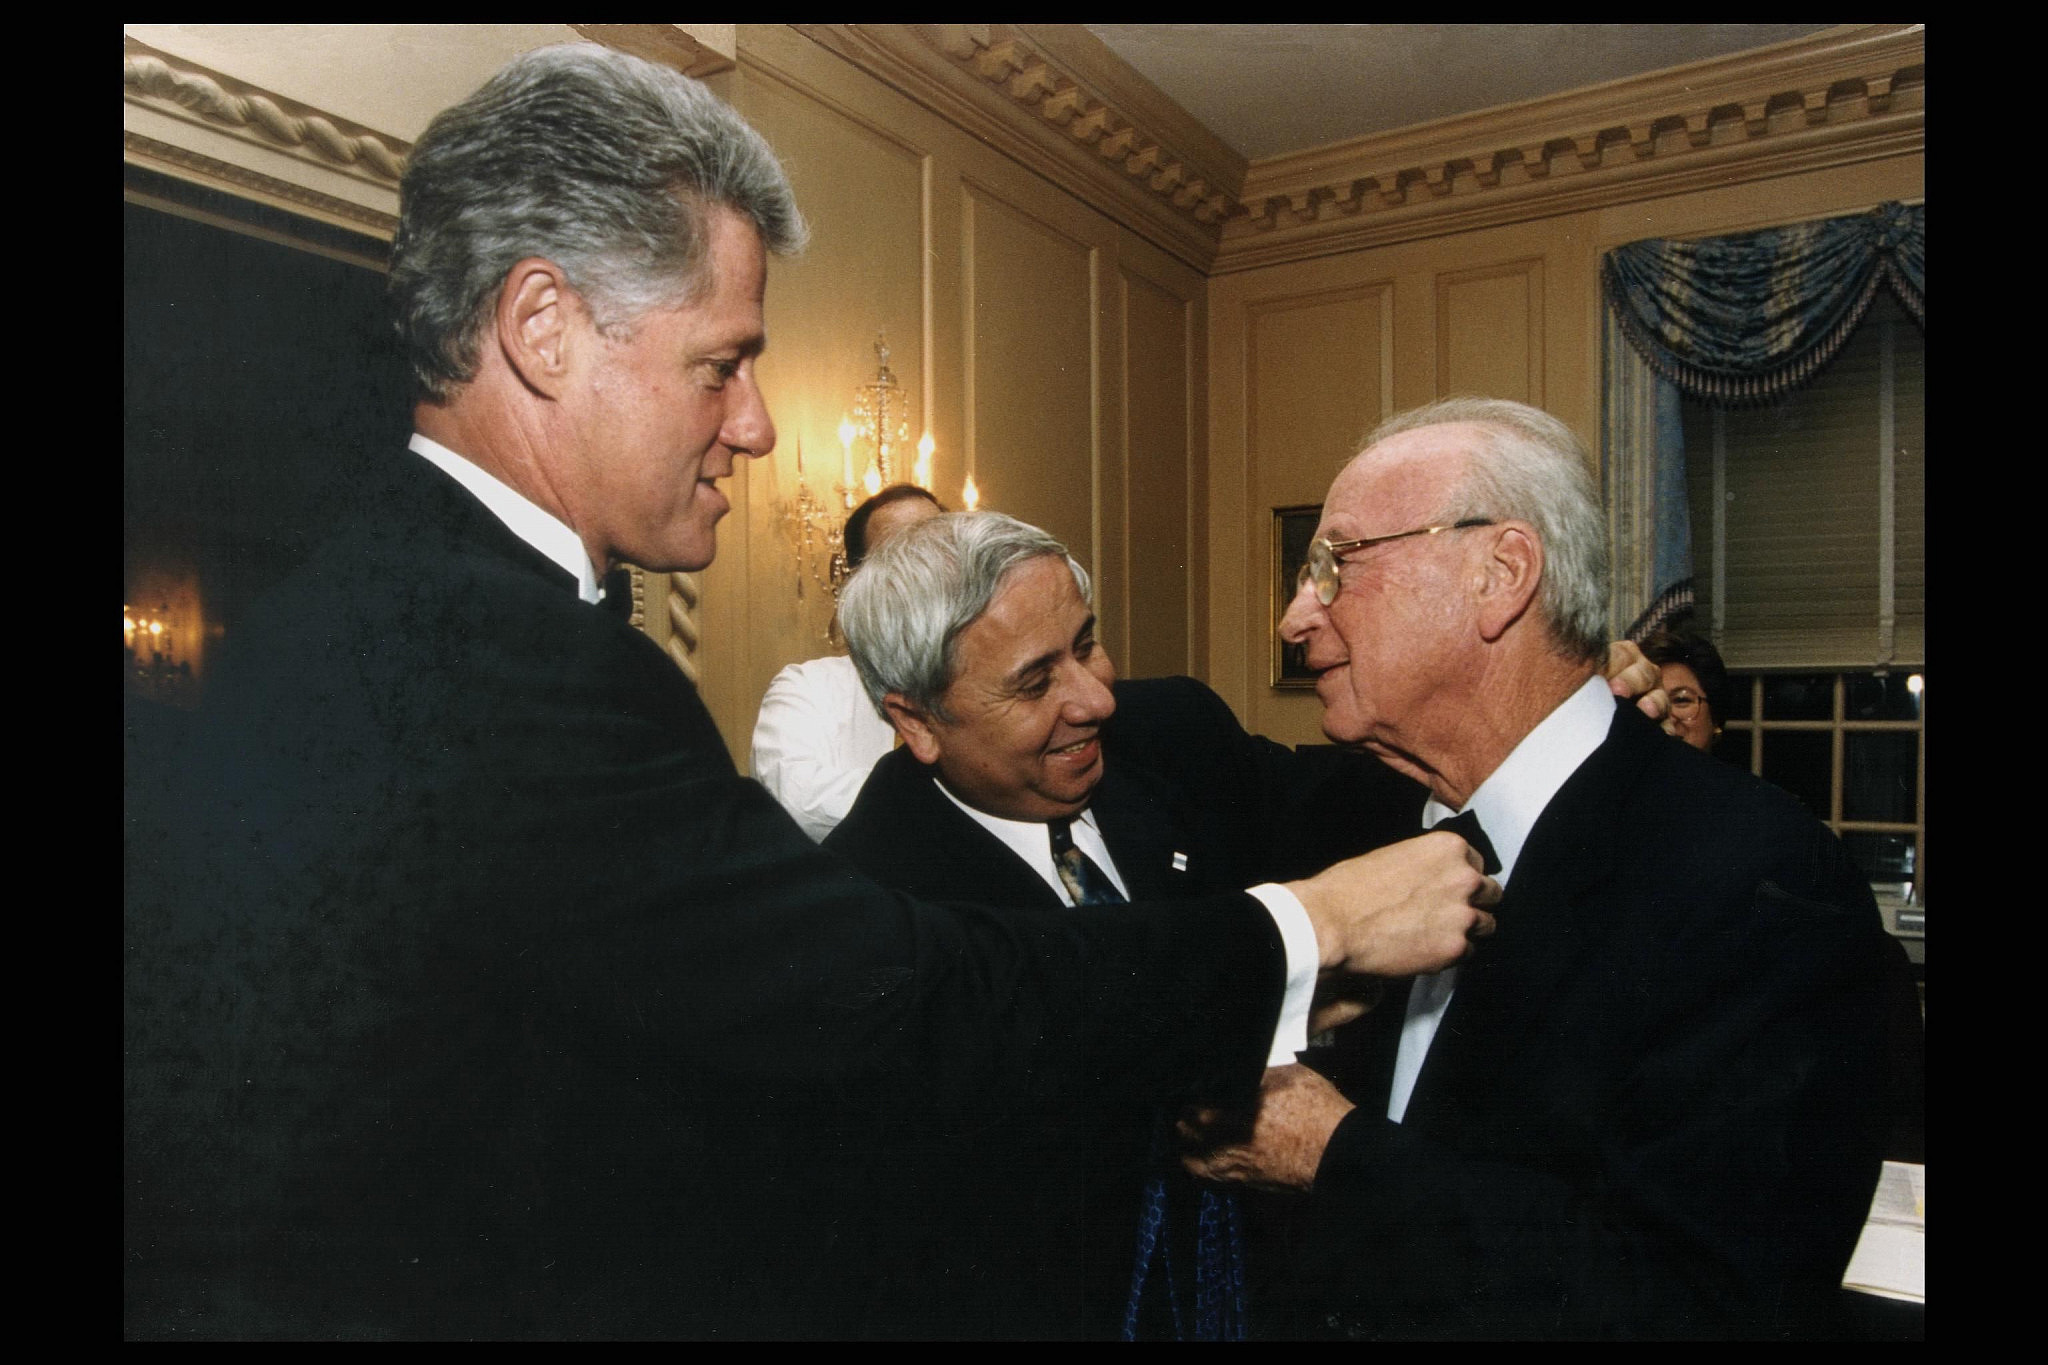 נשיא ארה"ב ביל קלינטון ואיתן הבר עונבים עניבת פרפר לראש הממשלה יצחק רבין, טרם תחילת ארוע בוושינגטון, ארה"ב.
צילום: אבי אוחיון, לע"מ